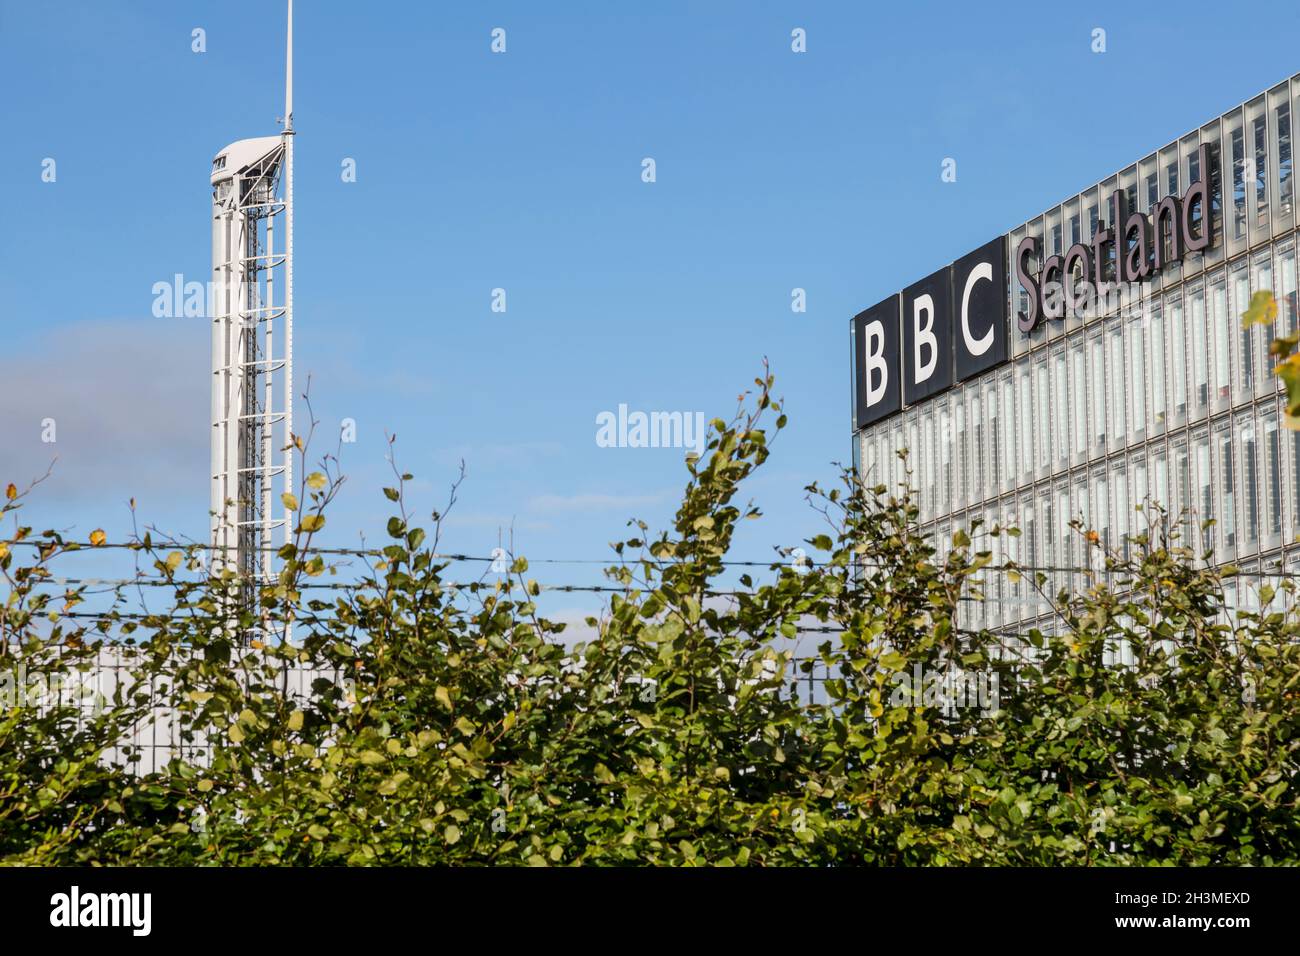 BBC Scotland Siège avec la Science Center Tower en arrière-plan, Pacific Quay, Glasgow, Écosse, Royaume-Uni Banque D'Images